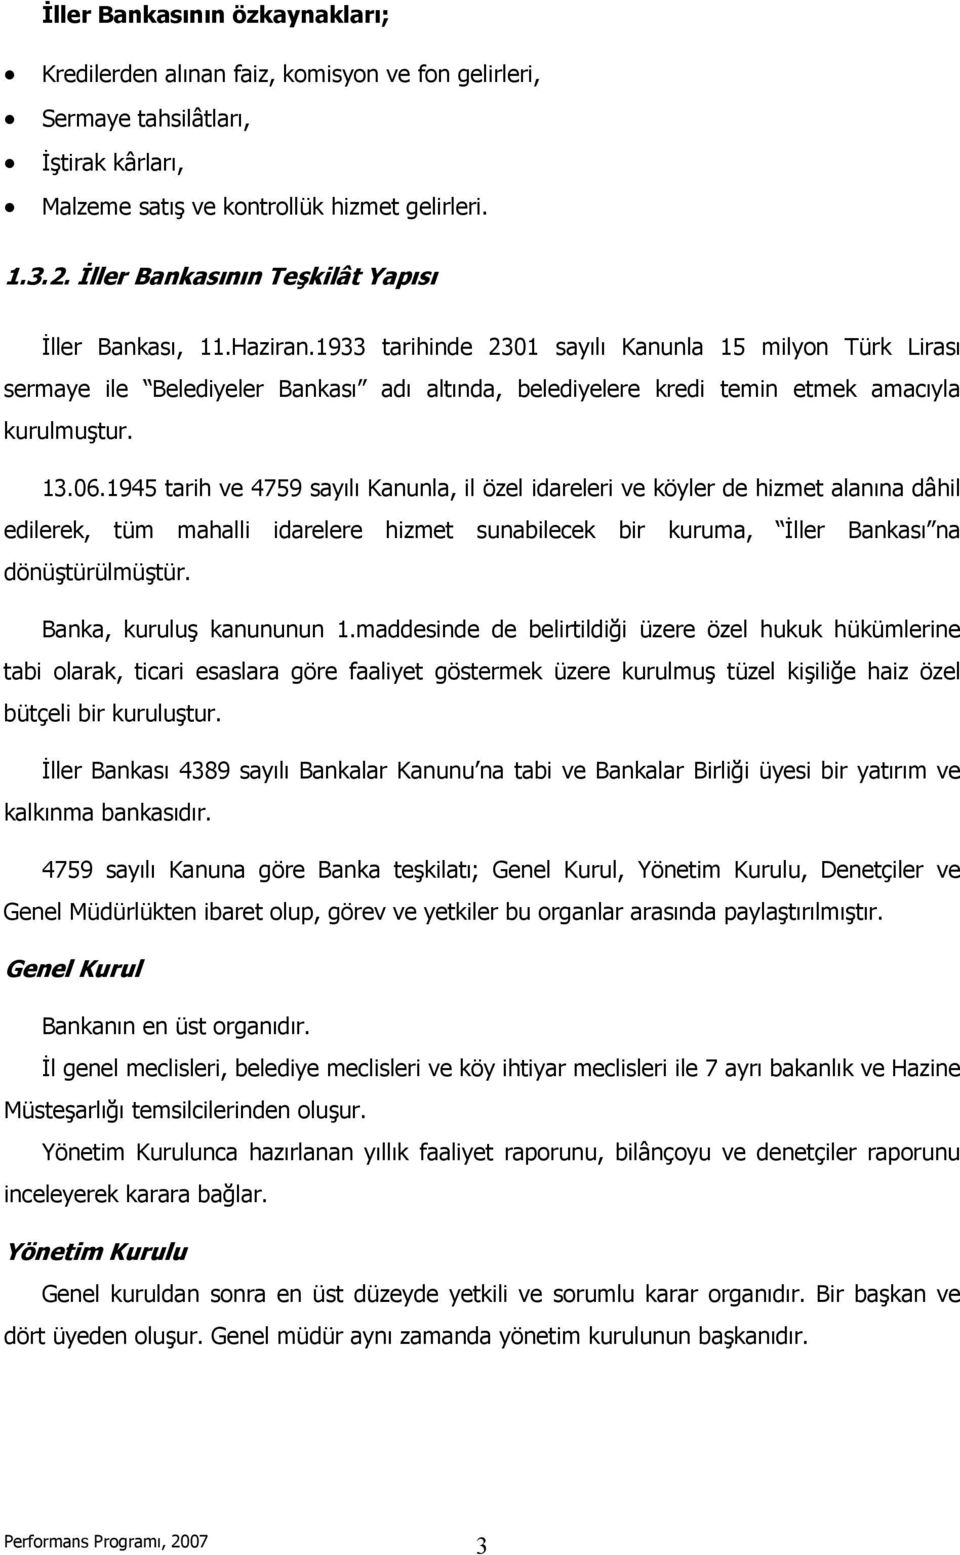 1933 tarihinde 2301 sayılı Kanunla 15 milyon Türk Lirası sermaye ile Belediyeler Bankası adı altında, belediyelere kredi temin etmek amacıyla kurulmuştur. 13.06.